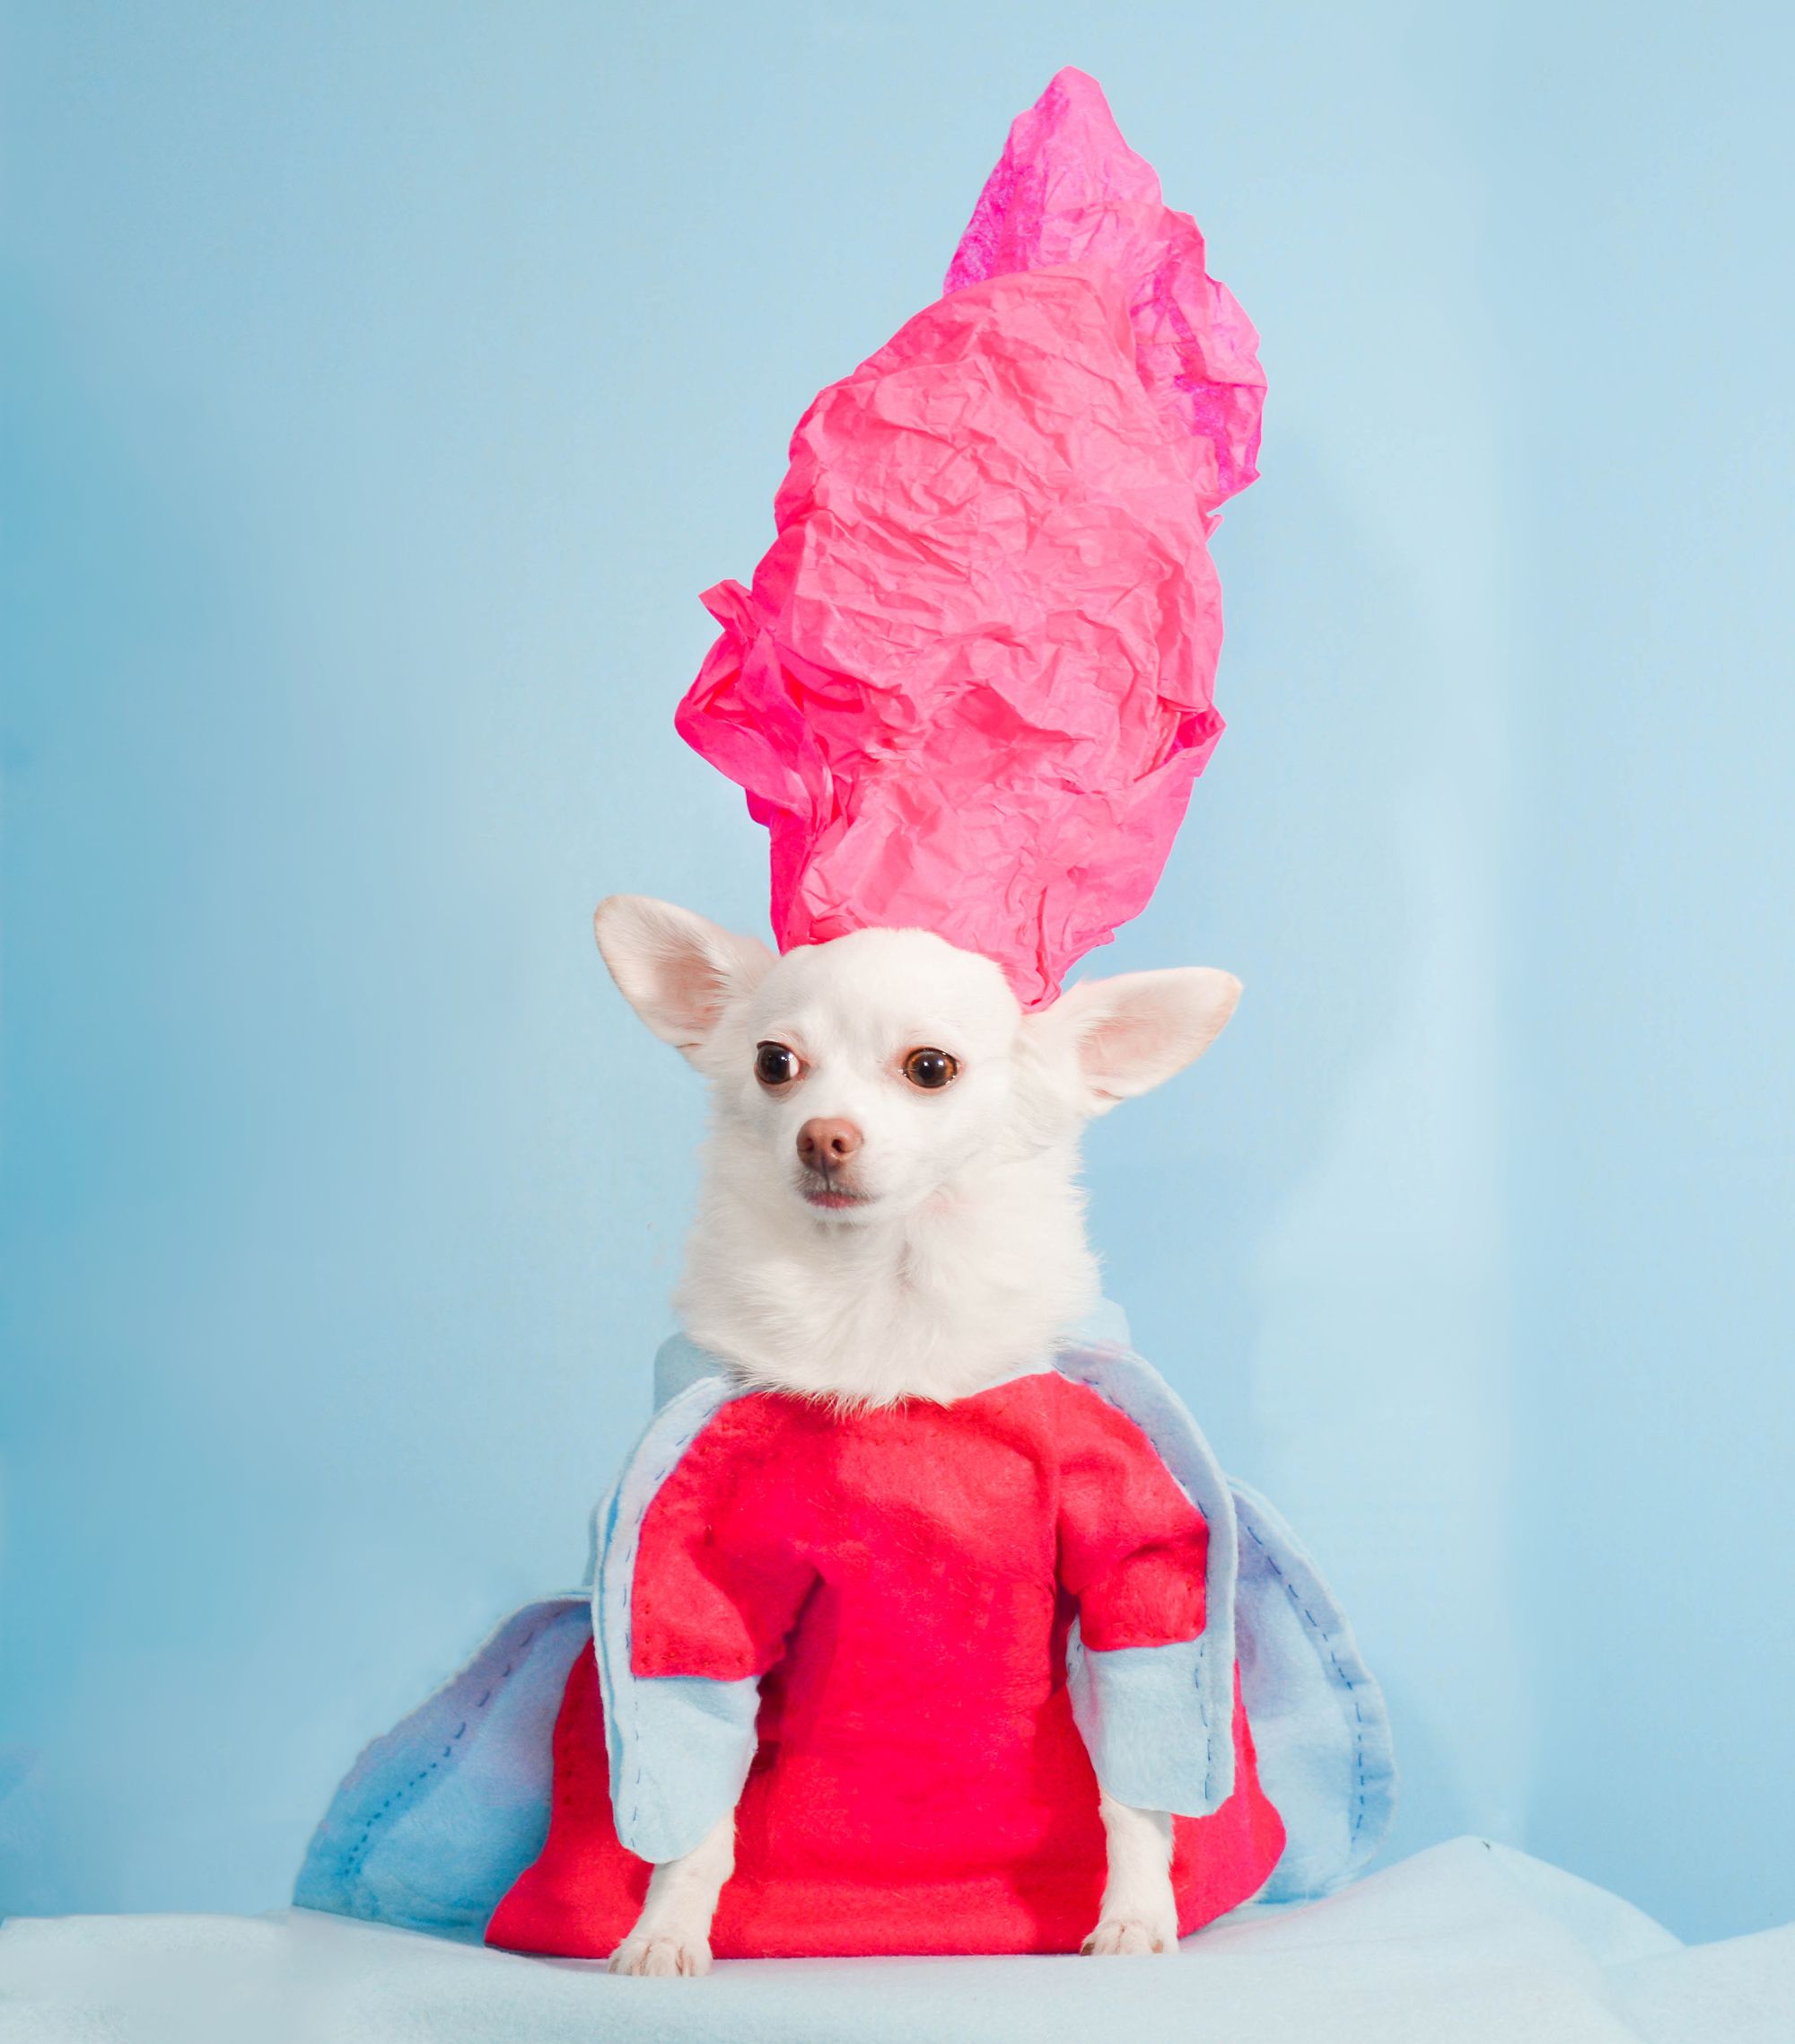 Anthony Rubio Dog Fashion Met Gala - Chihuahuas in Met Gala Fashion